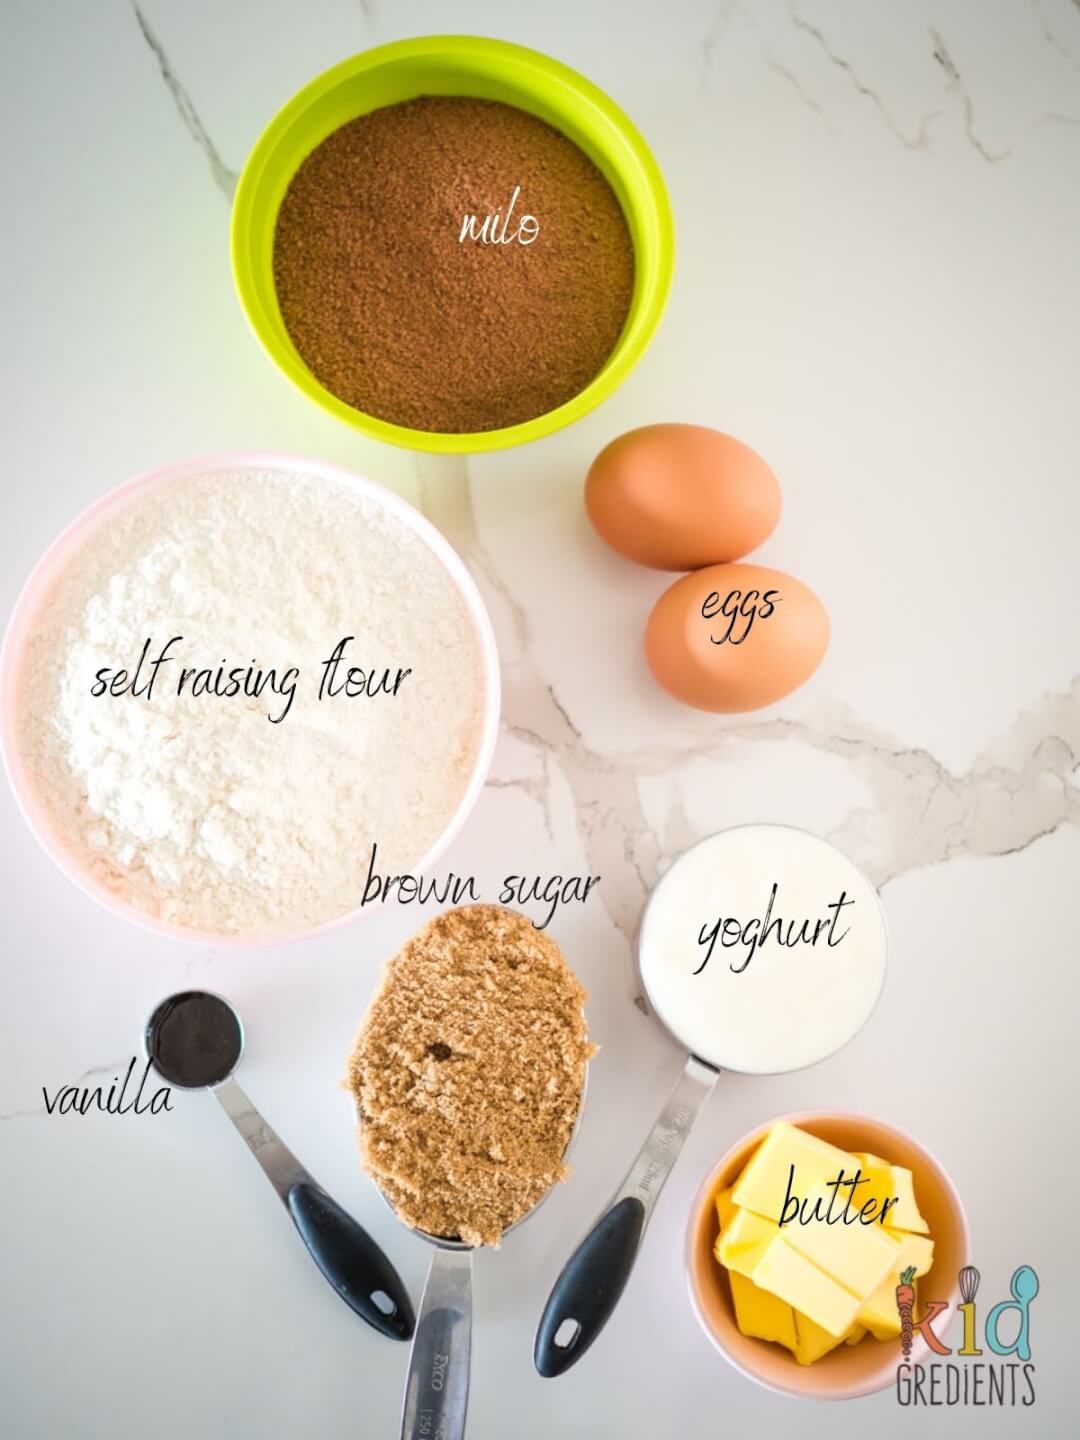 ingredients for milo muffins: eggs, flour, milo, b utter, brown sugar, vanilla, yoghurt